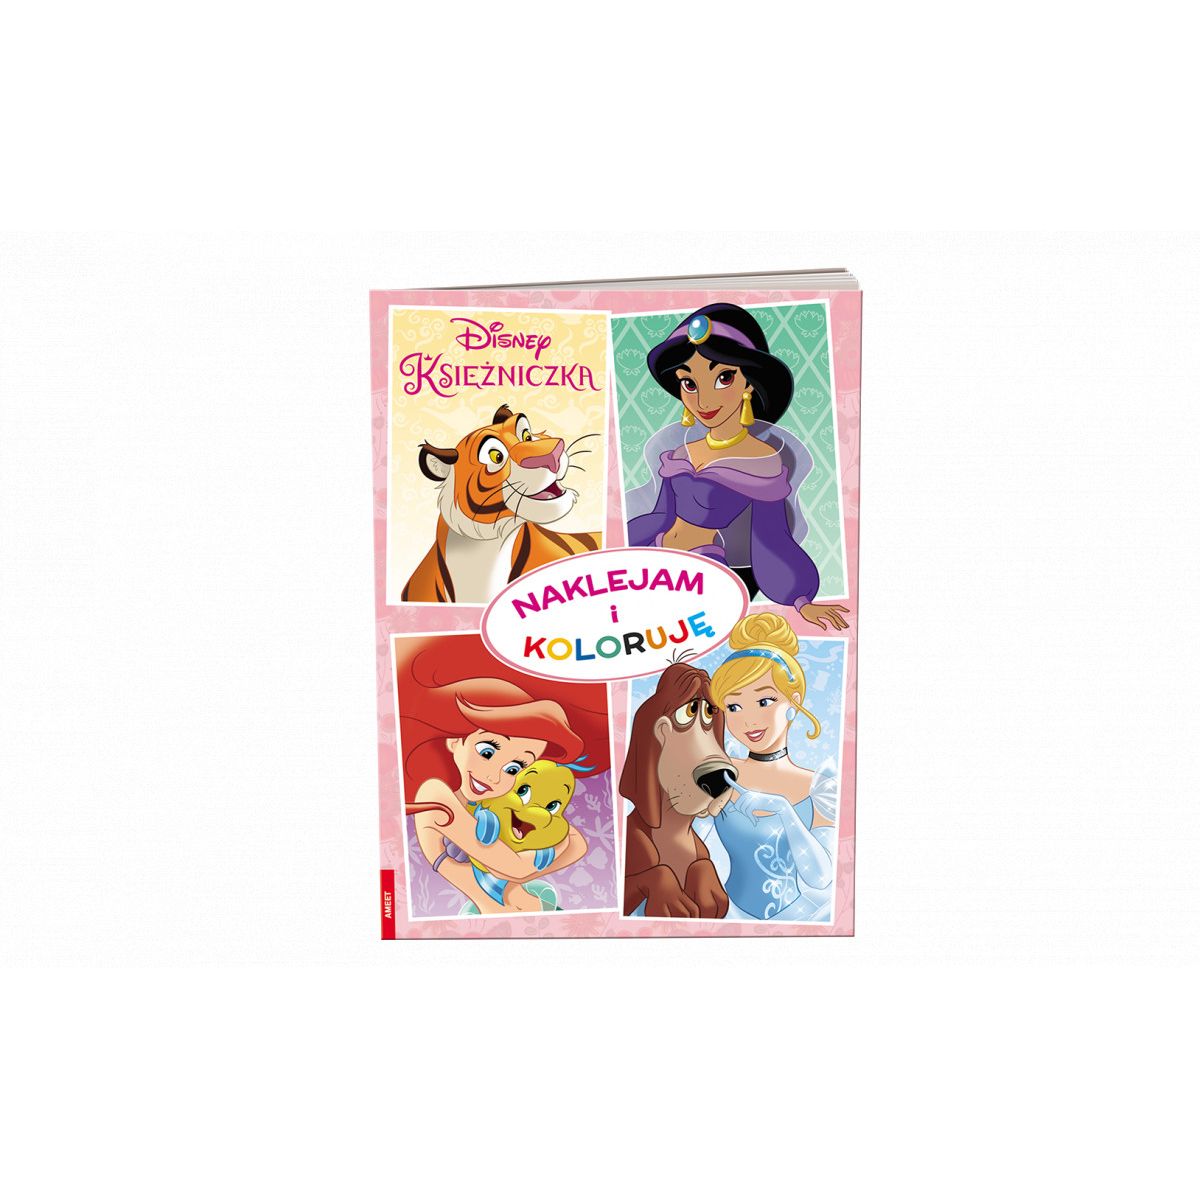 Książka dla dzieci Disney Księżniczka. Naklejam i Koloruję Ameet (Nak 9106)